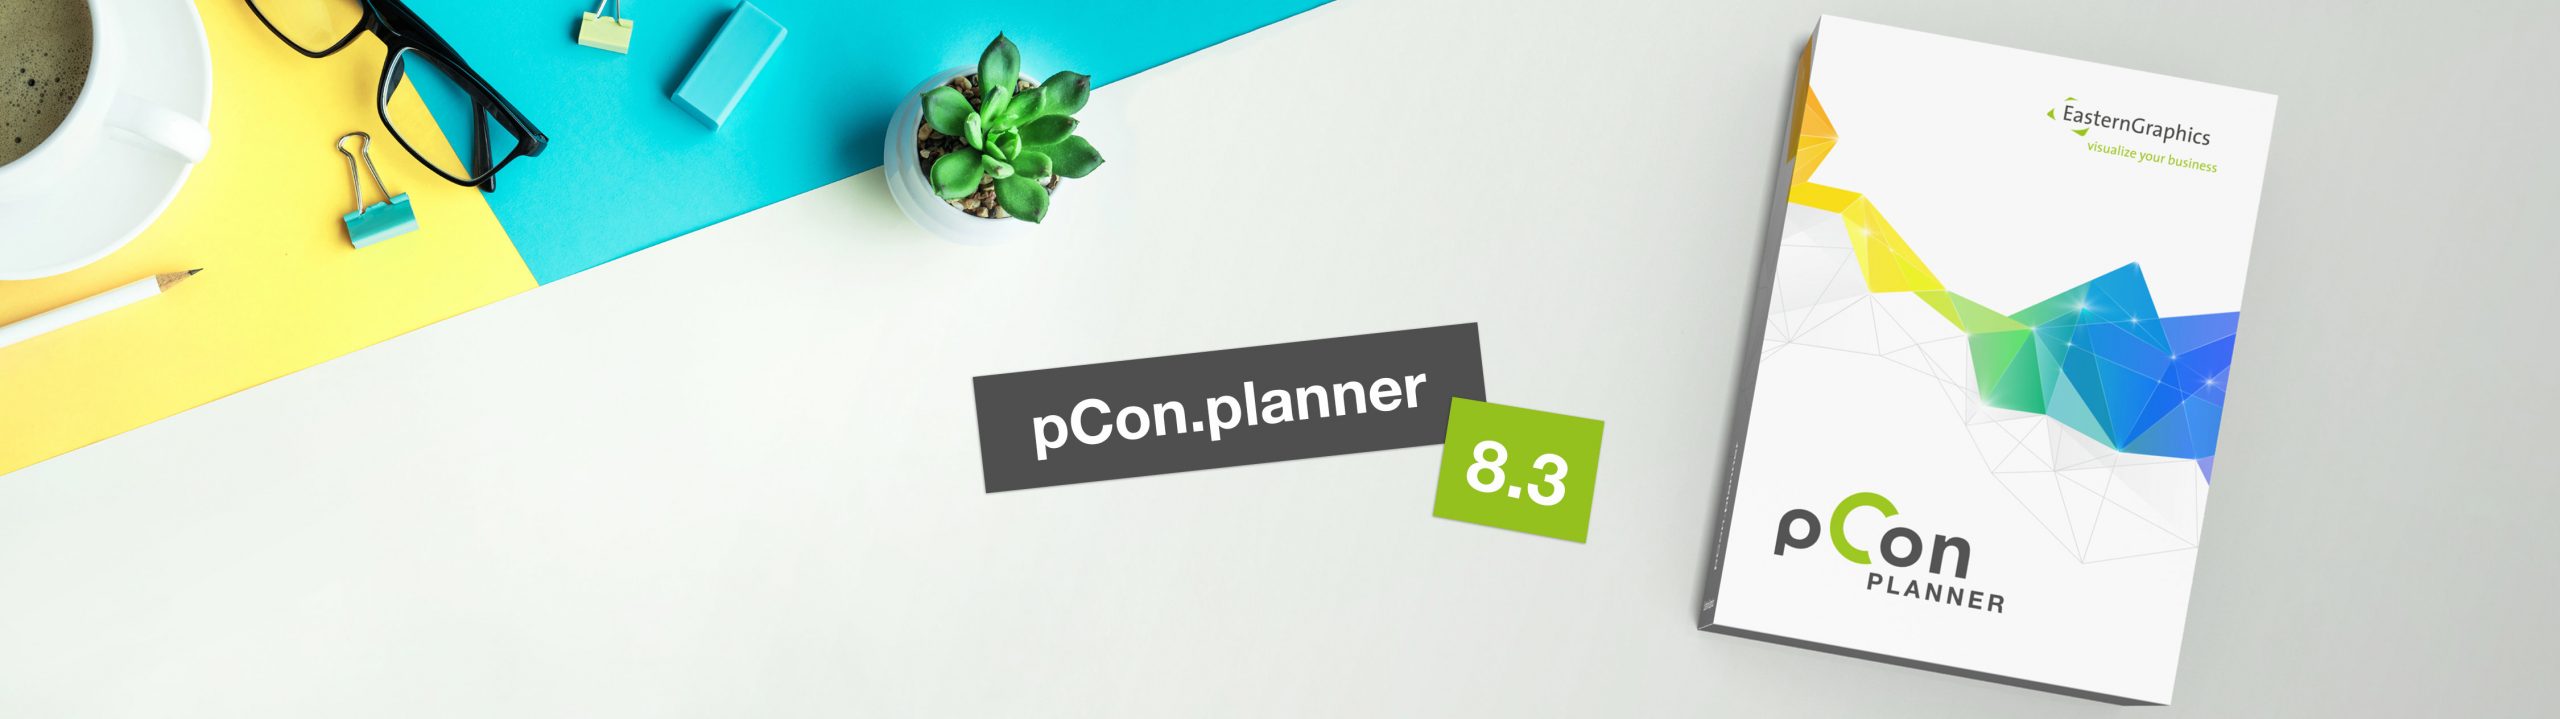 pcon.planner 8.3 ahora disponible